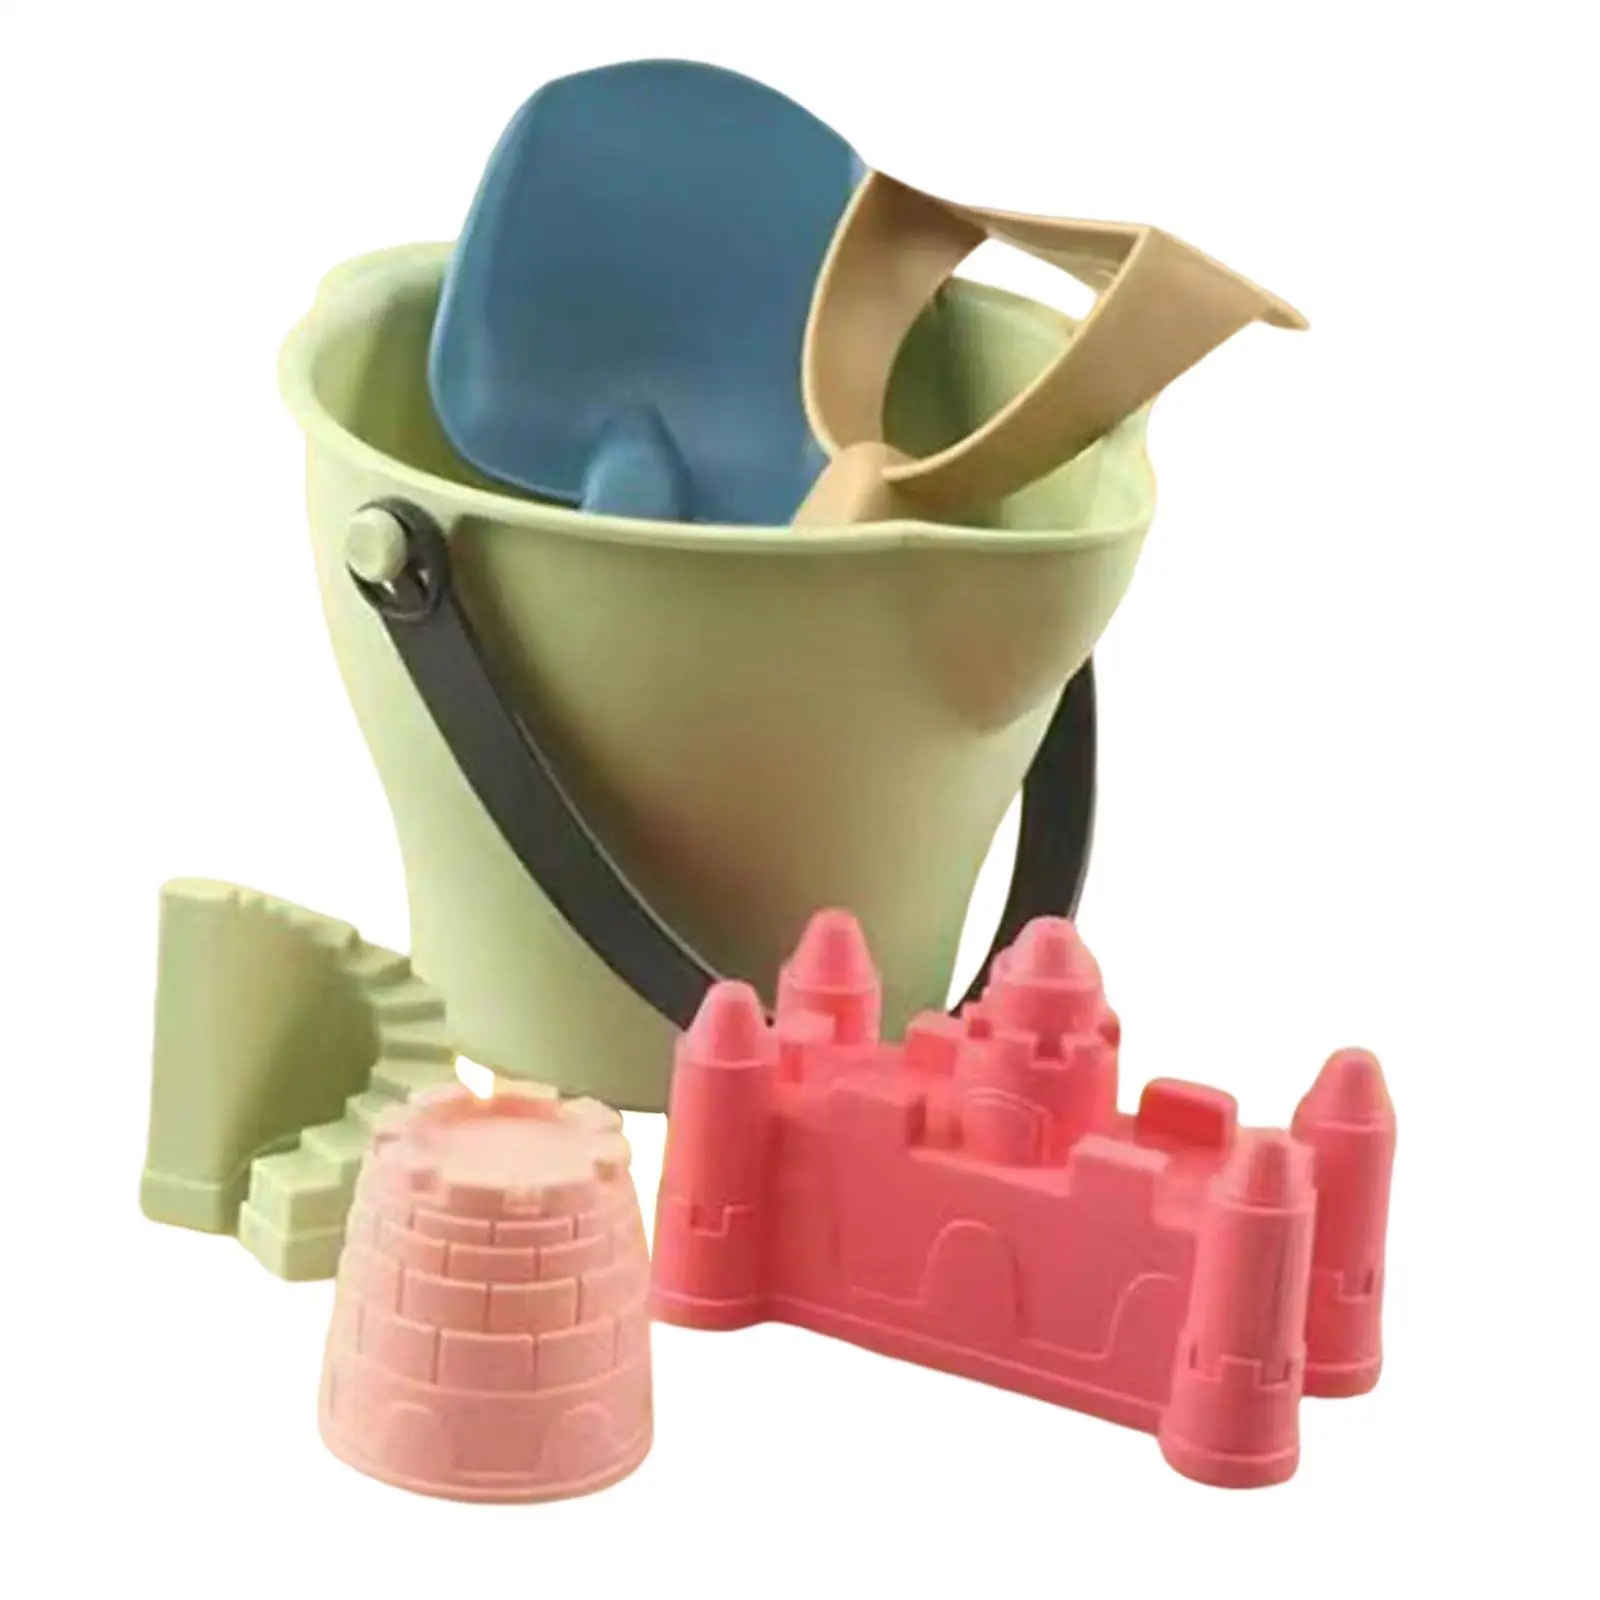 Sandbox Toys Castle Kit Travel Sand Toys for Boys Girls Toddler Children